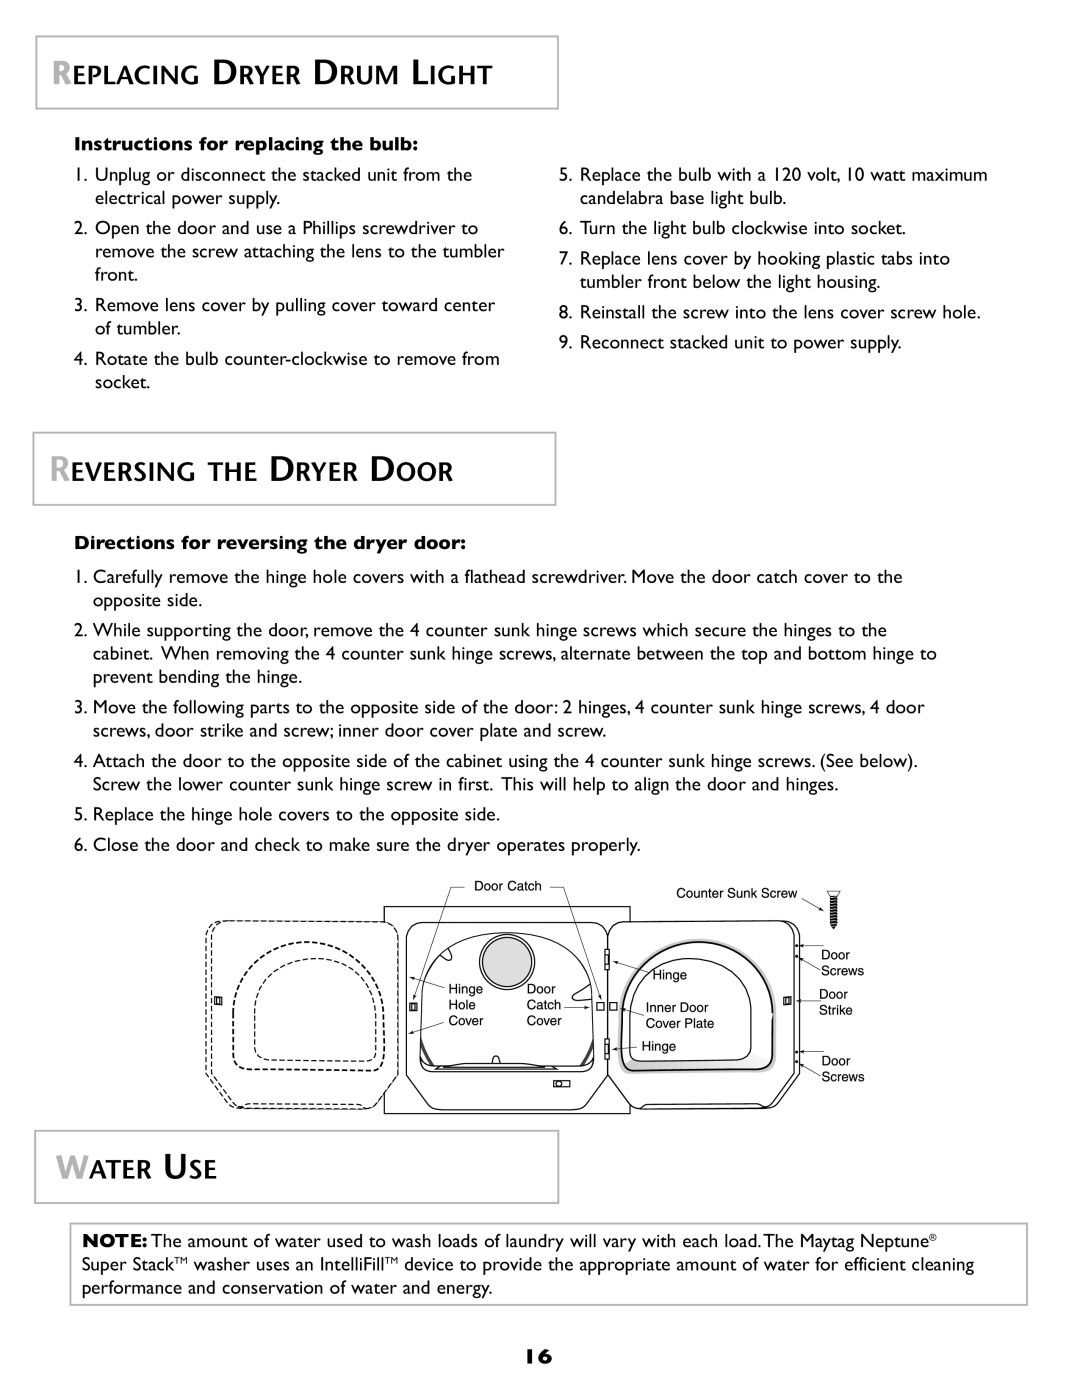 Maytag SL-3 Replacing Dryer Drum Light, Reversing The Dryer Door, Water Use, Directions for reversing the dryer door 